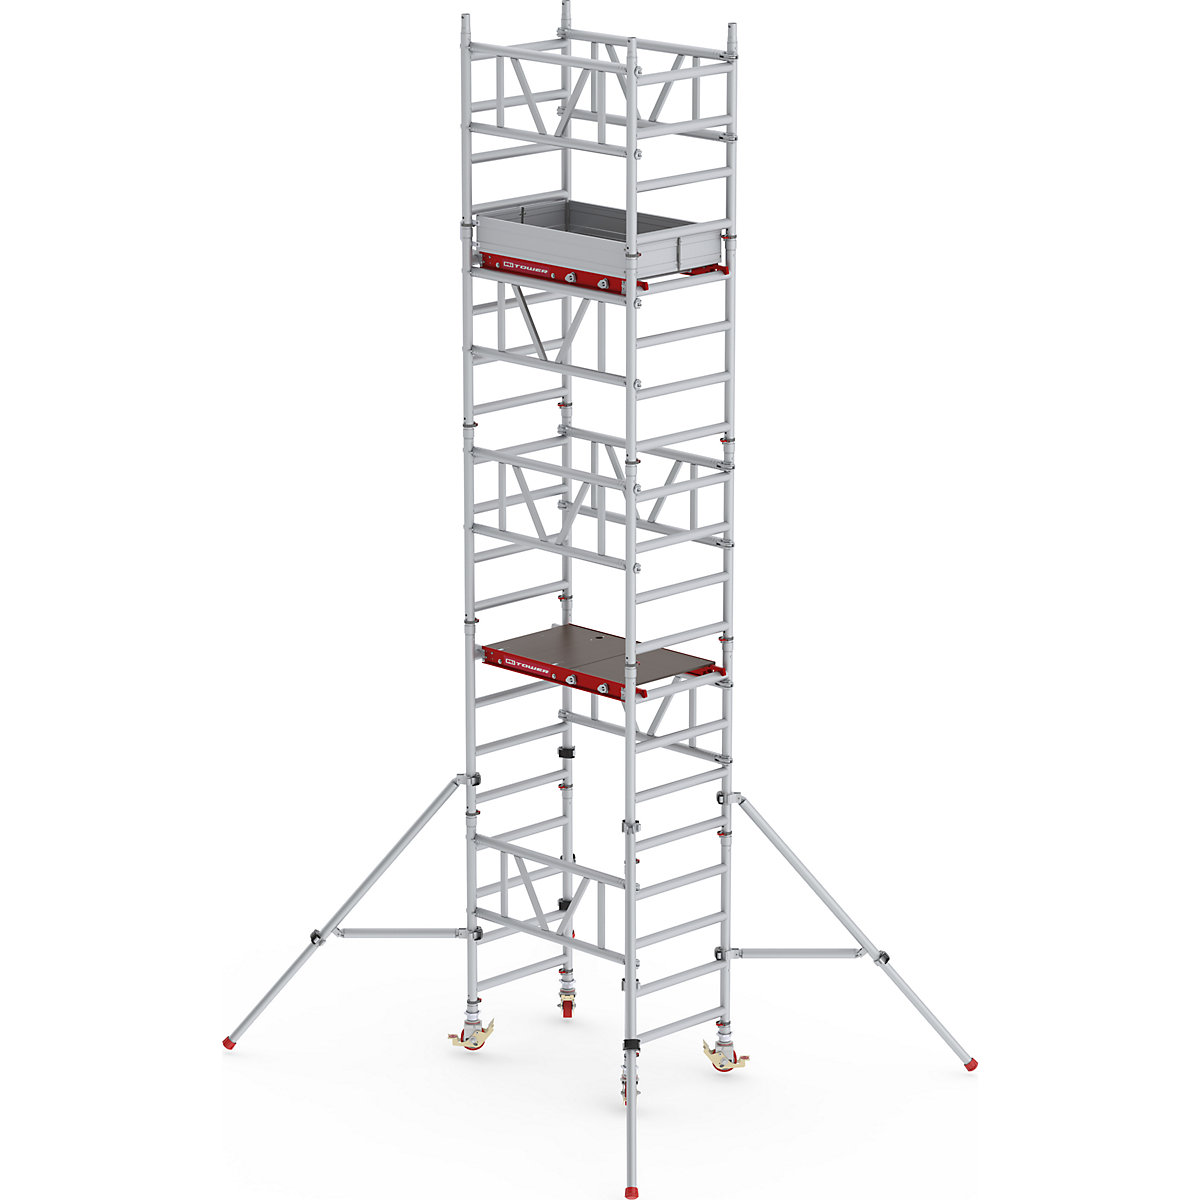 Snelbouw-rolsteiger MiTOWER Standaard – Altrex, houten platform, l x b = 1200 x 750 mm, werkhoogte 6 m-24